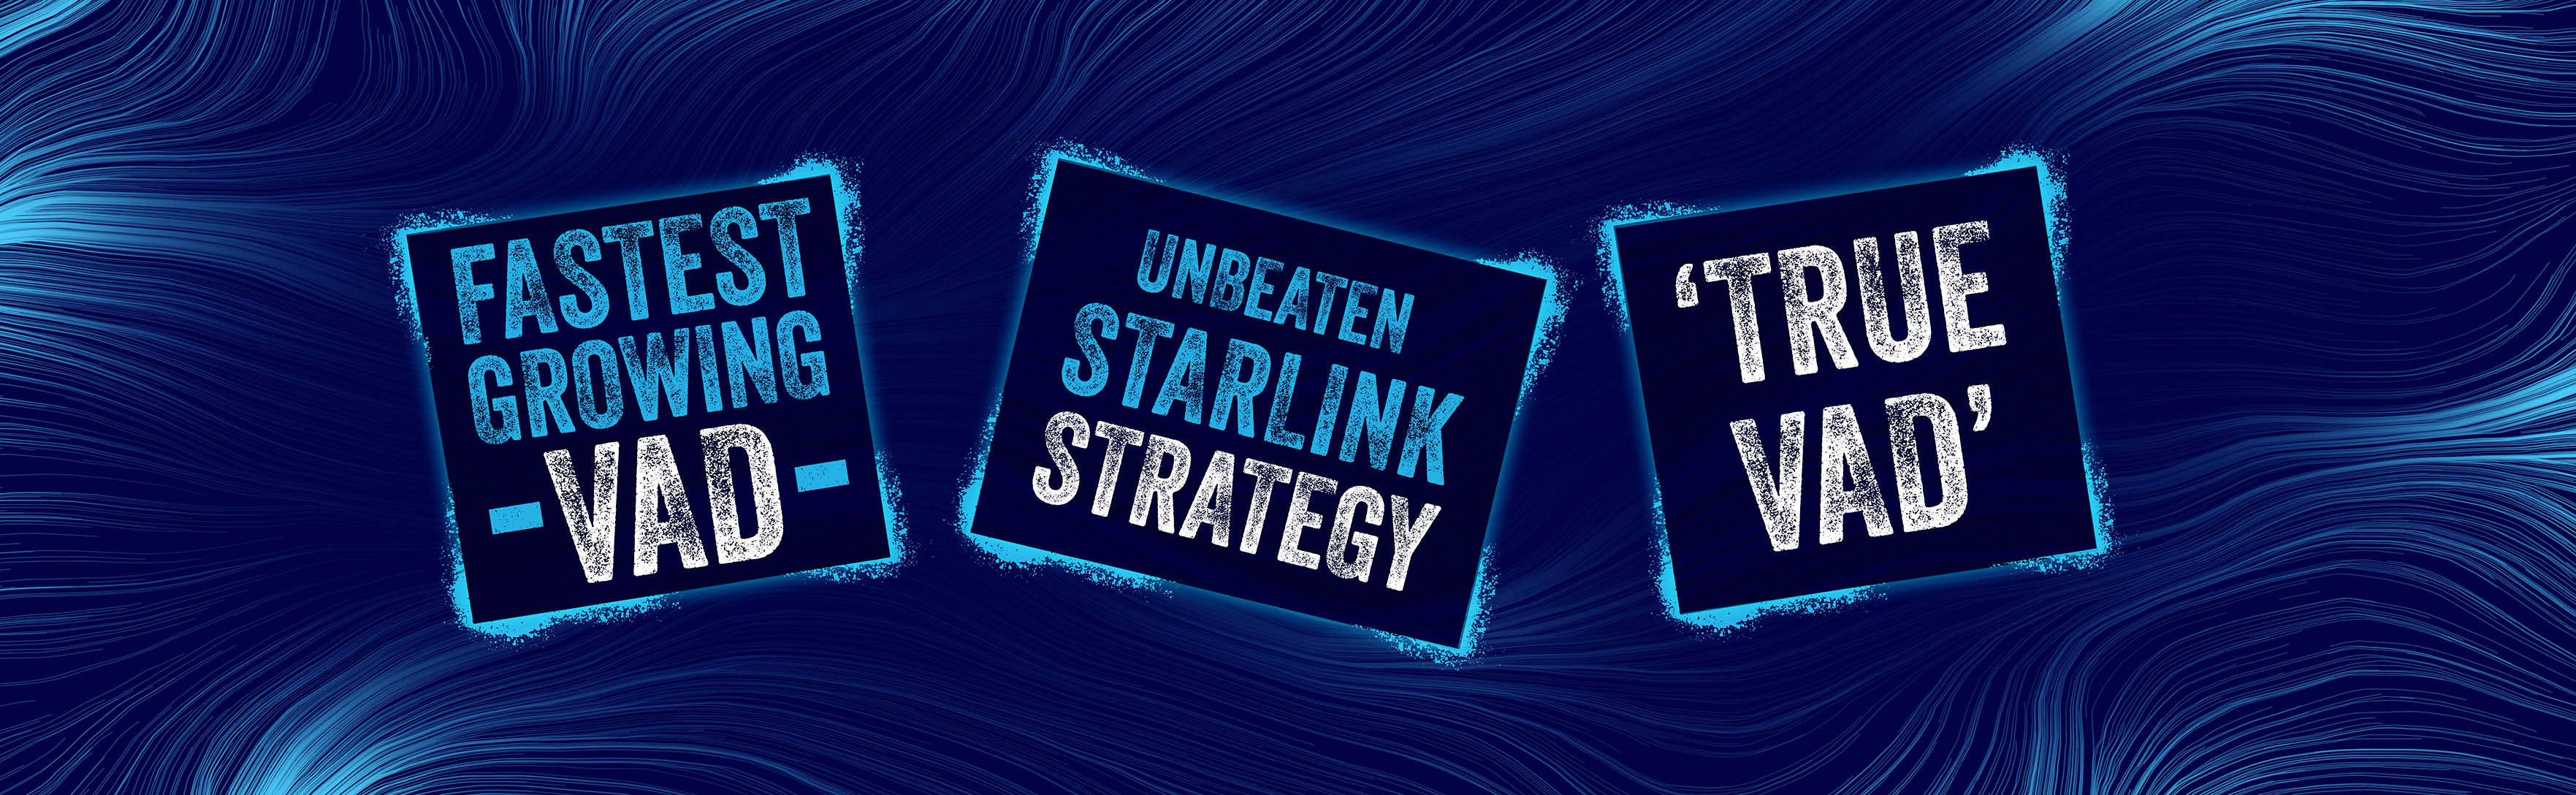 StarLink Story